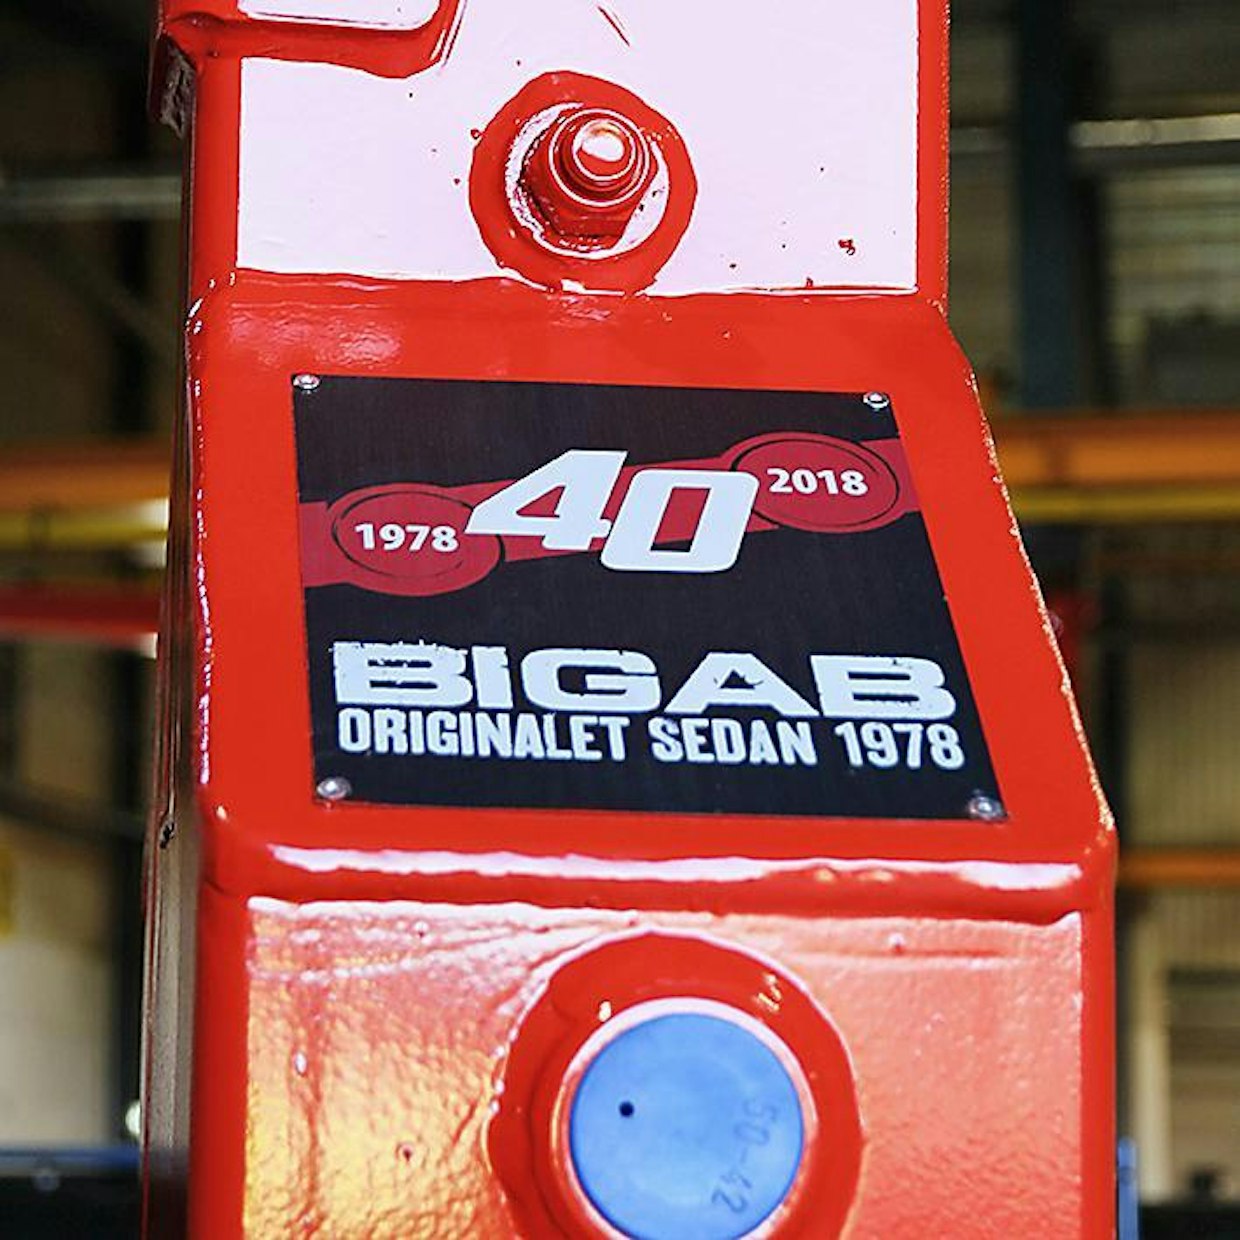 Bigab-tuotemerkki saavuttaa tänä vuonna 40 vuoden iän. Fors MW osti Bigabin valmistusoikeudet vuonna 1999.